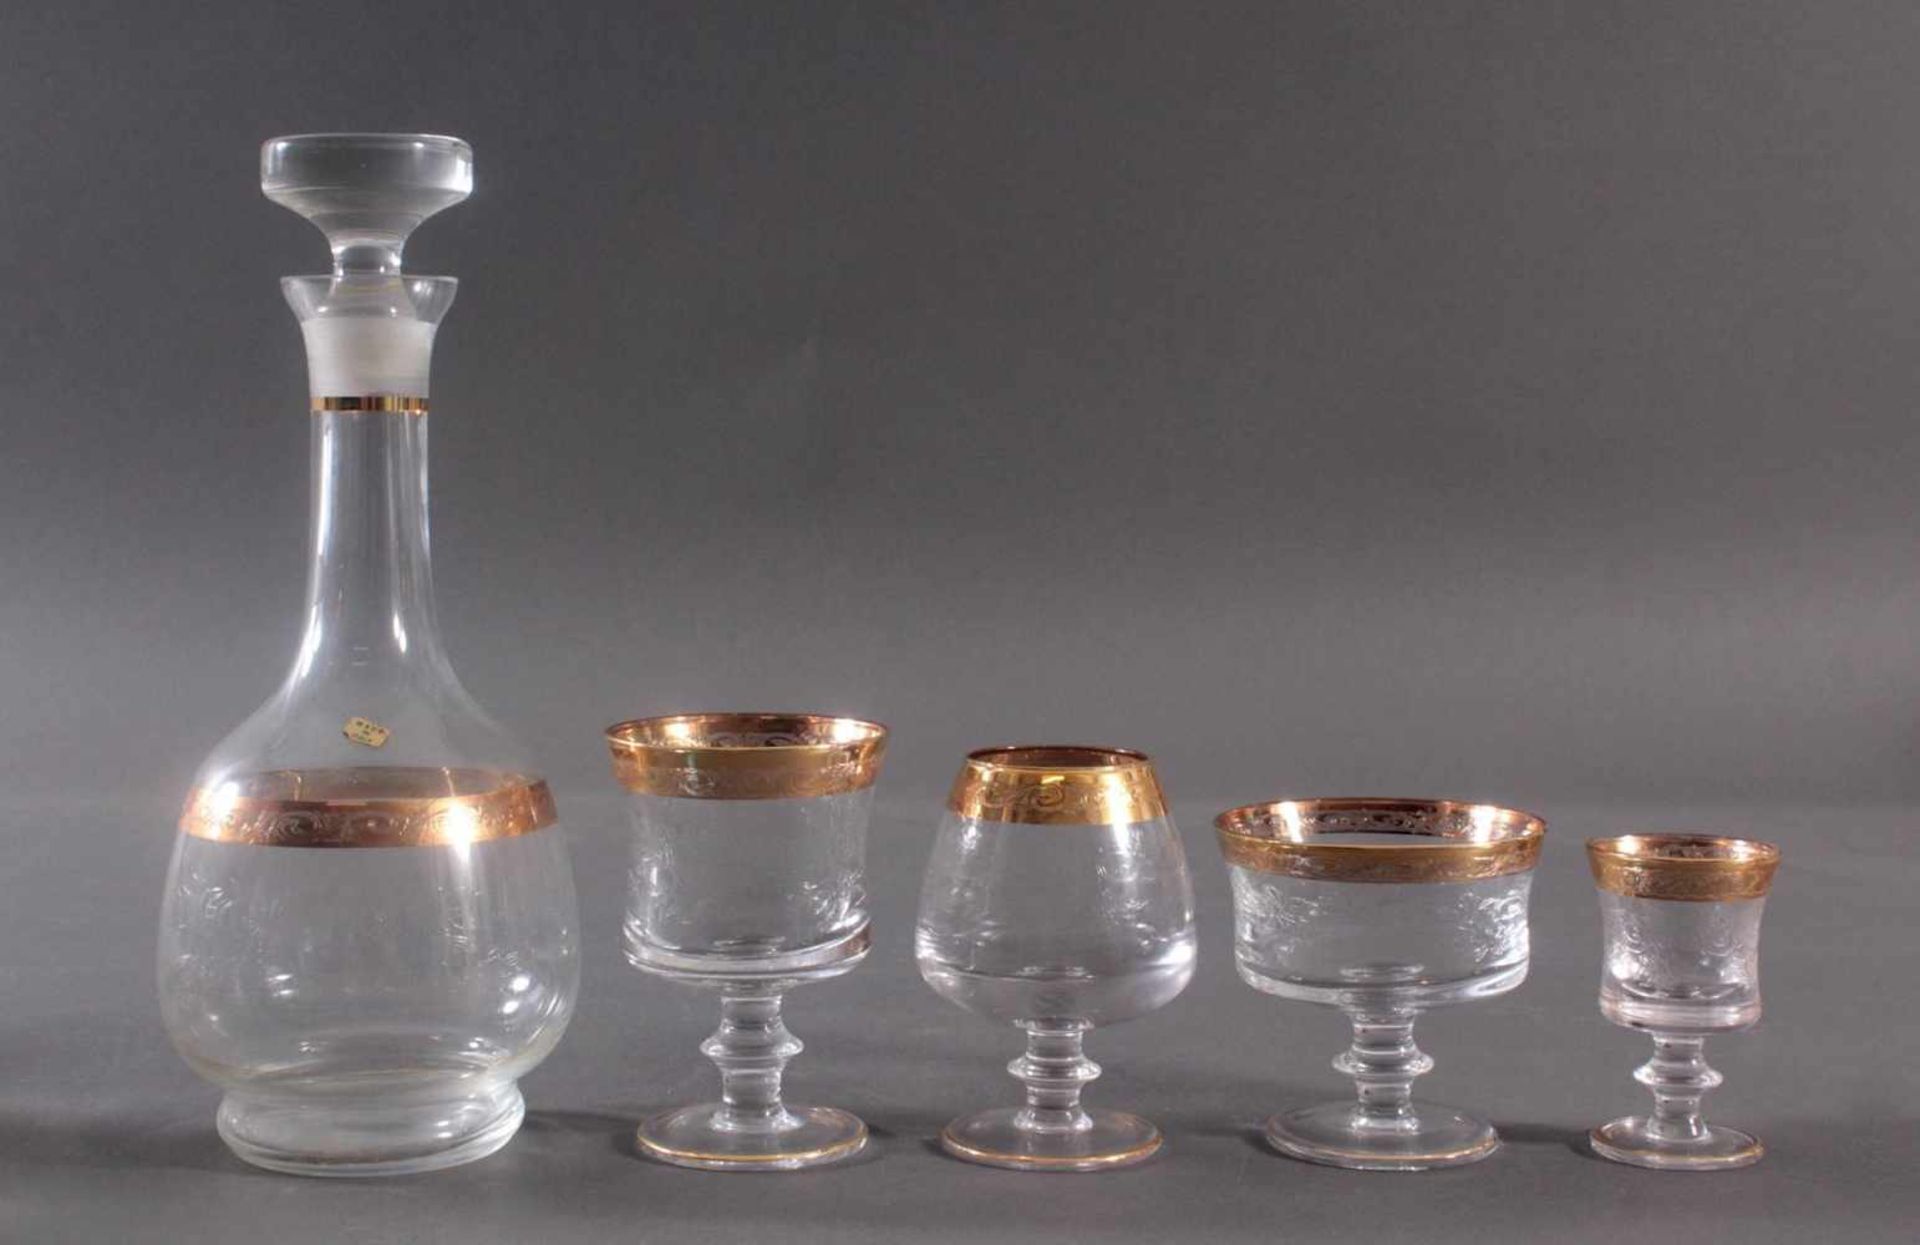 Murano Medici - GläserFarbloses Kristallglas, Goldrand und feines Ätzdekor. 6 Champagner-Schalen, - Bild 3 aus 5